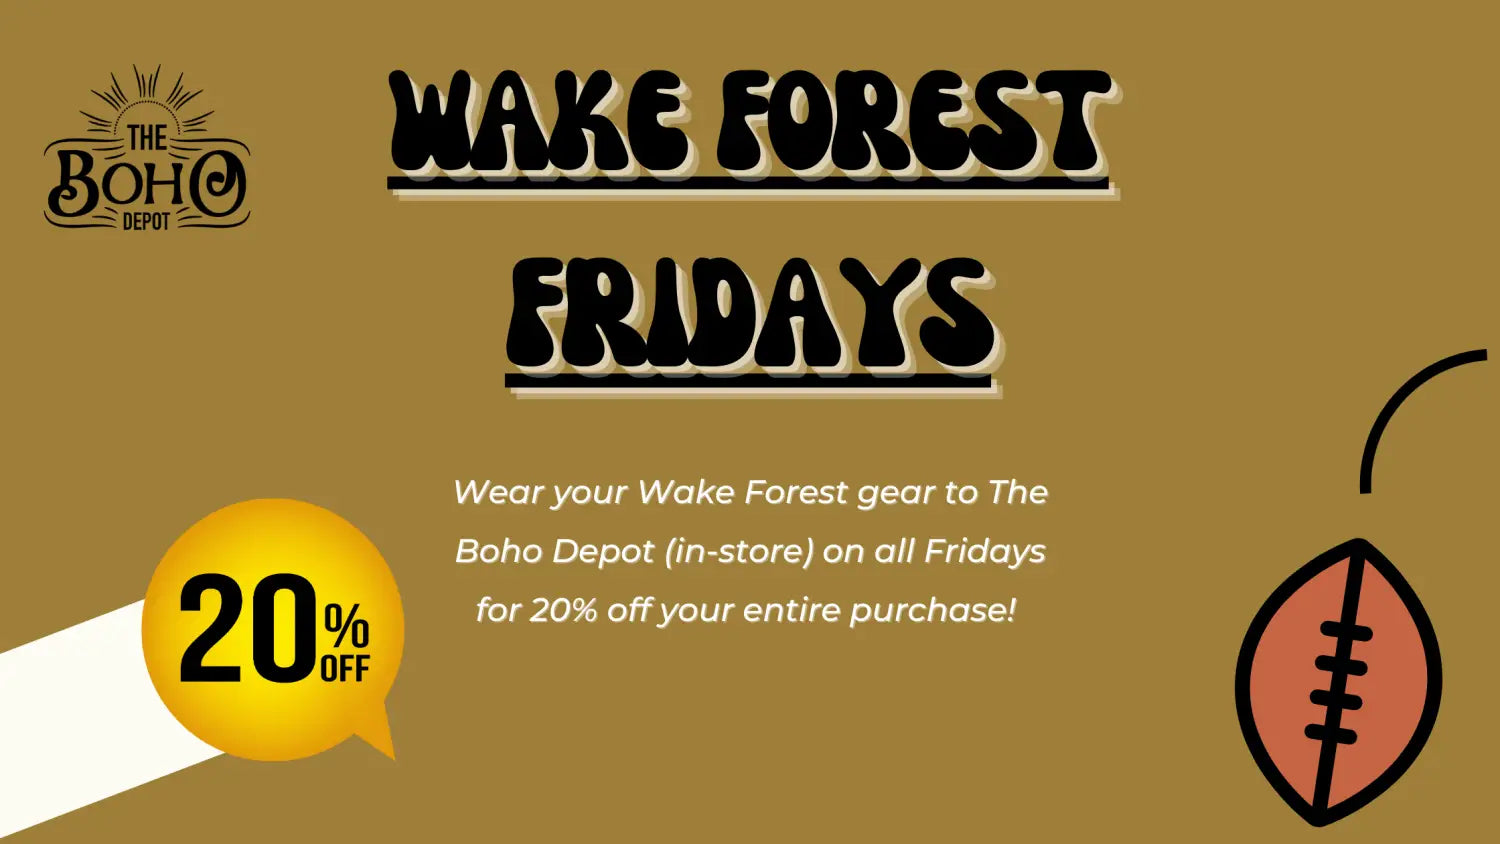 Wake Forest Fridays - The Boho Depot